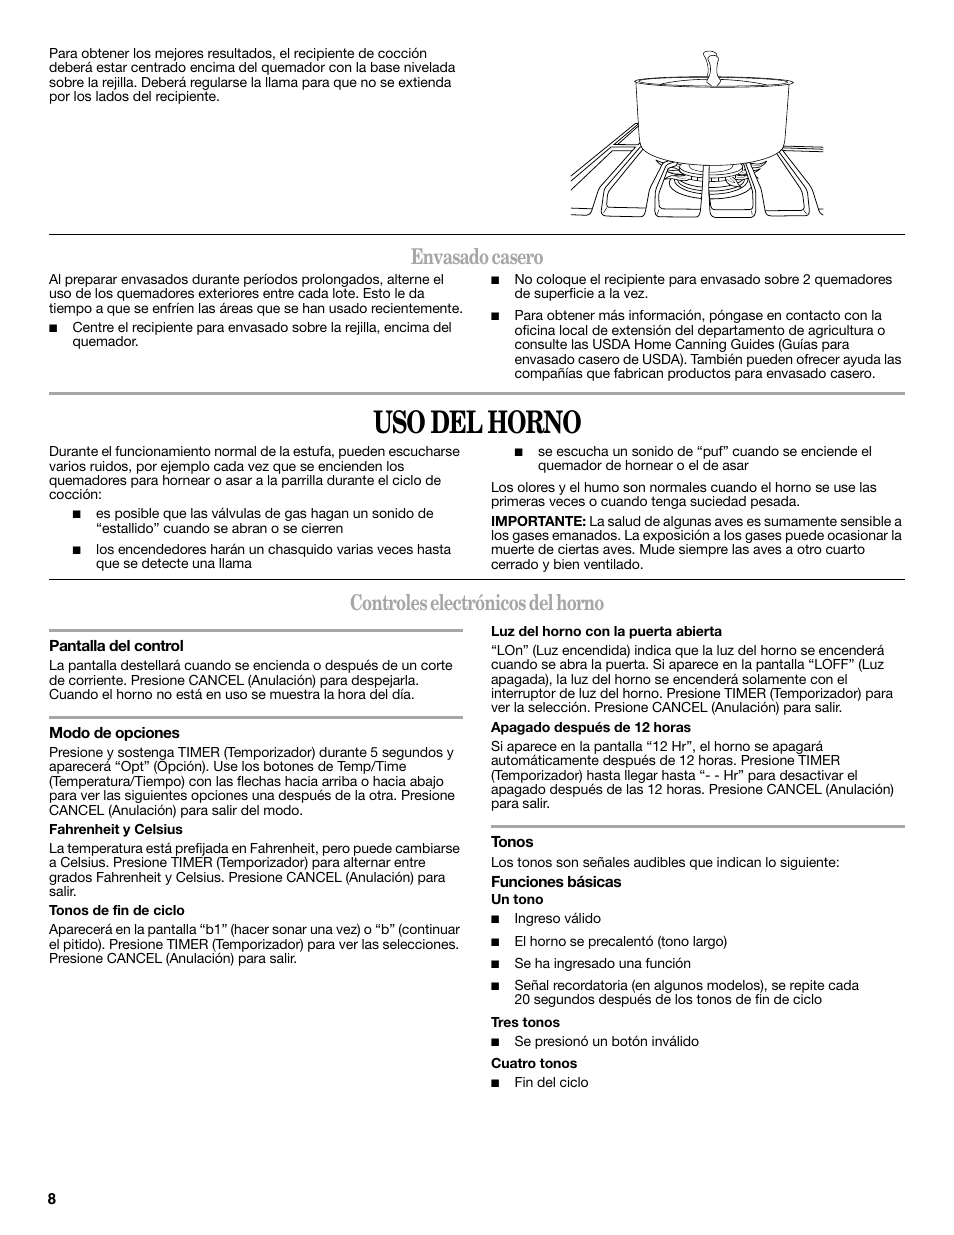 Uso del horno, Envasado casero, Controles electrónicos del horno | Whirlpool WFG510S0AS Manual del usuario | Página 8 / 19